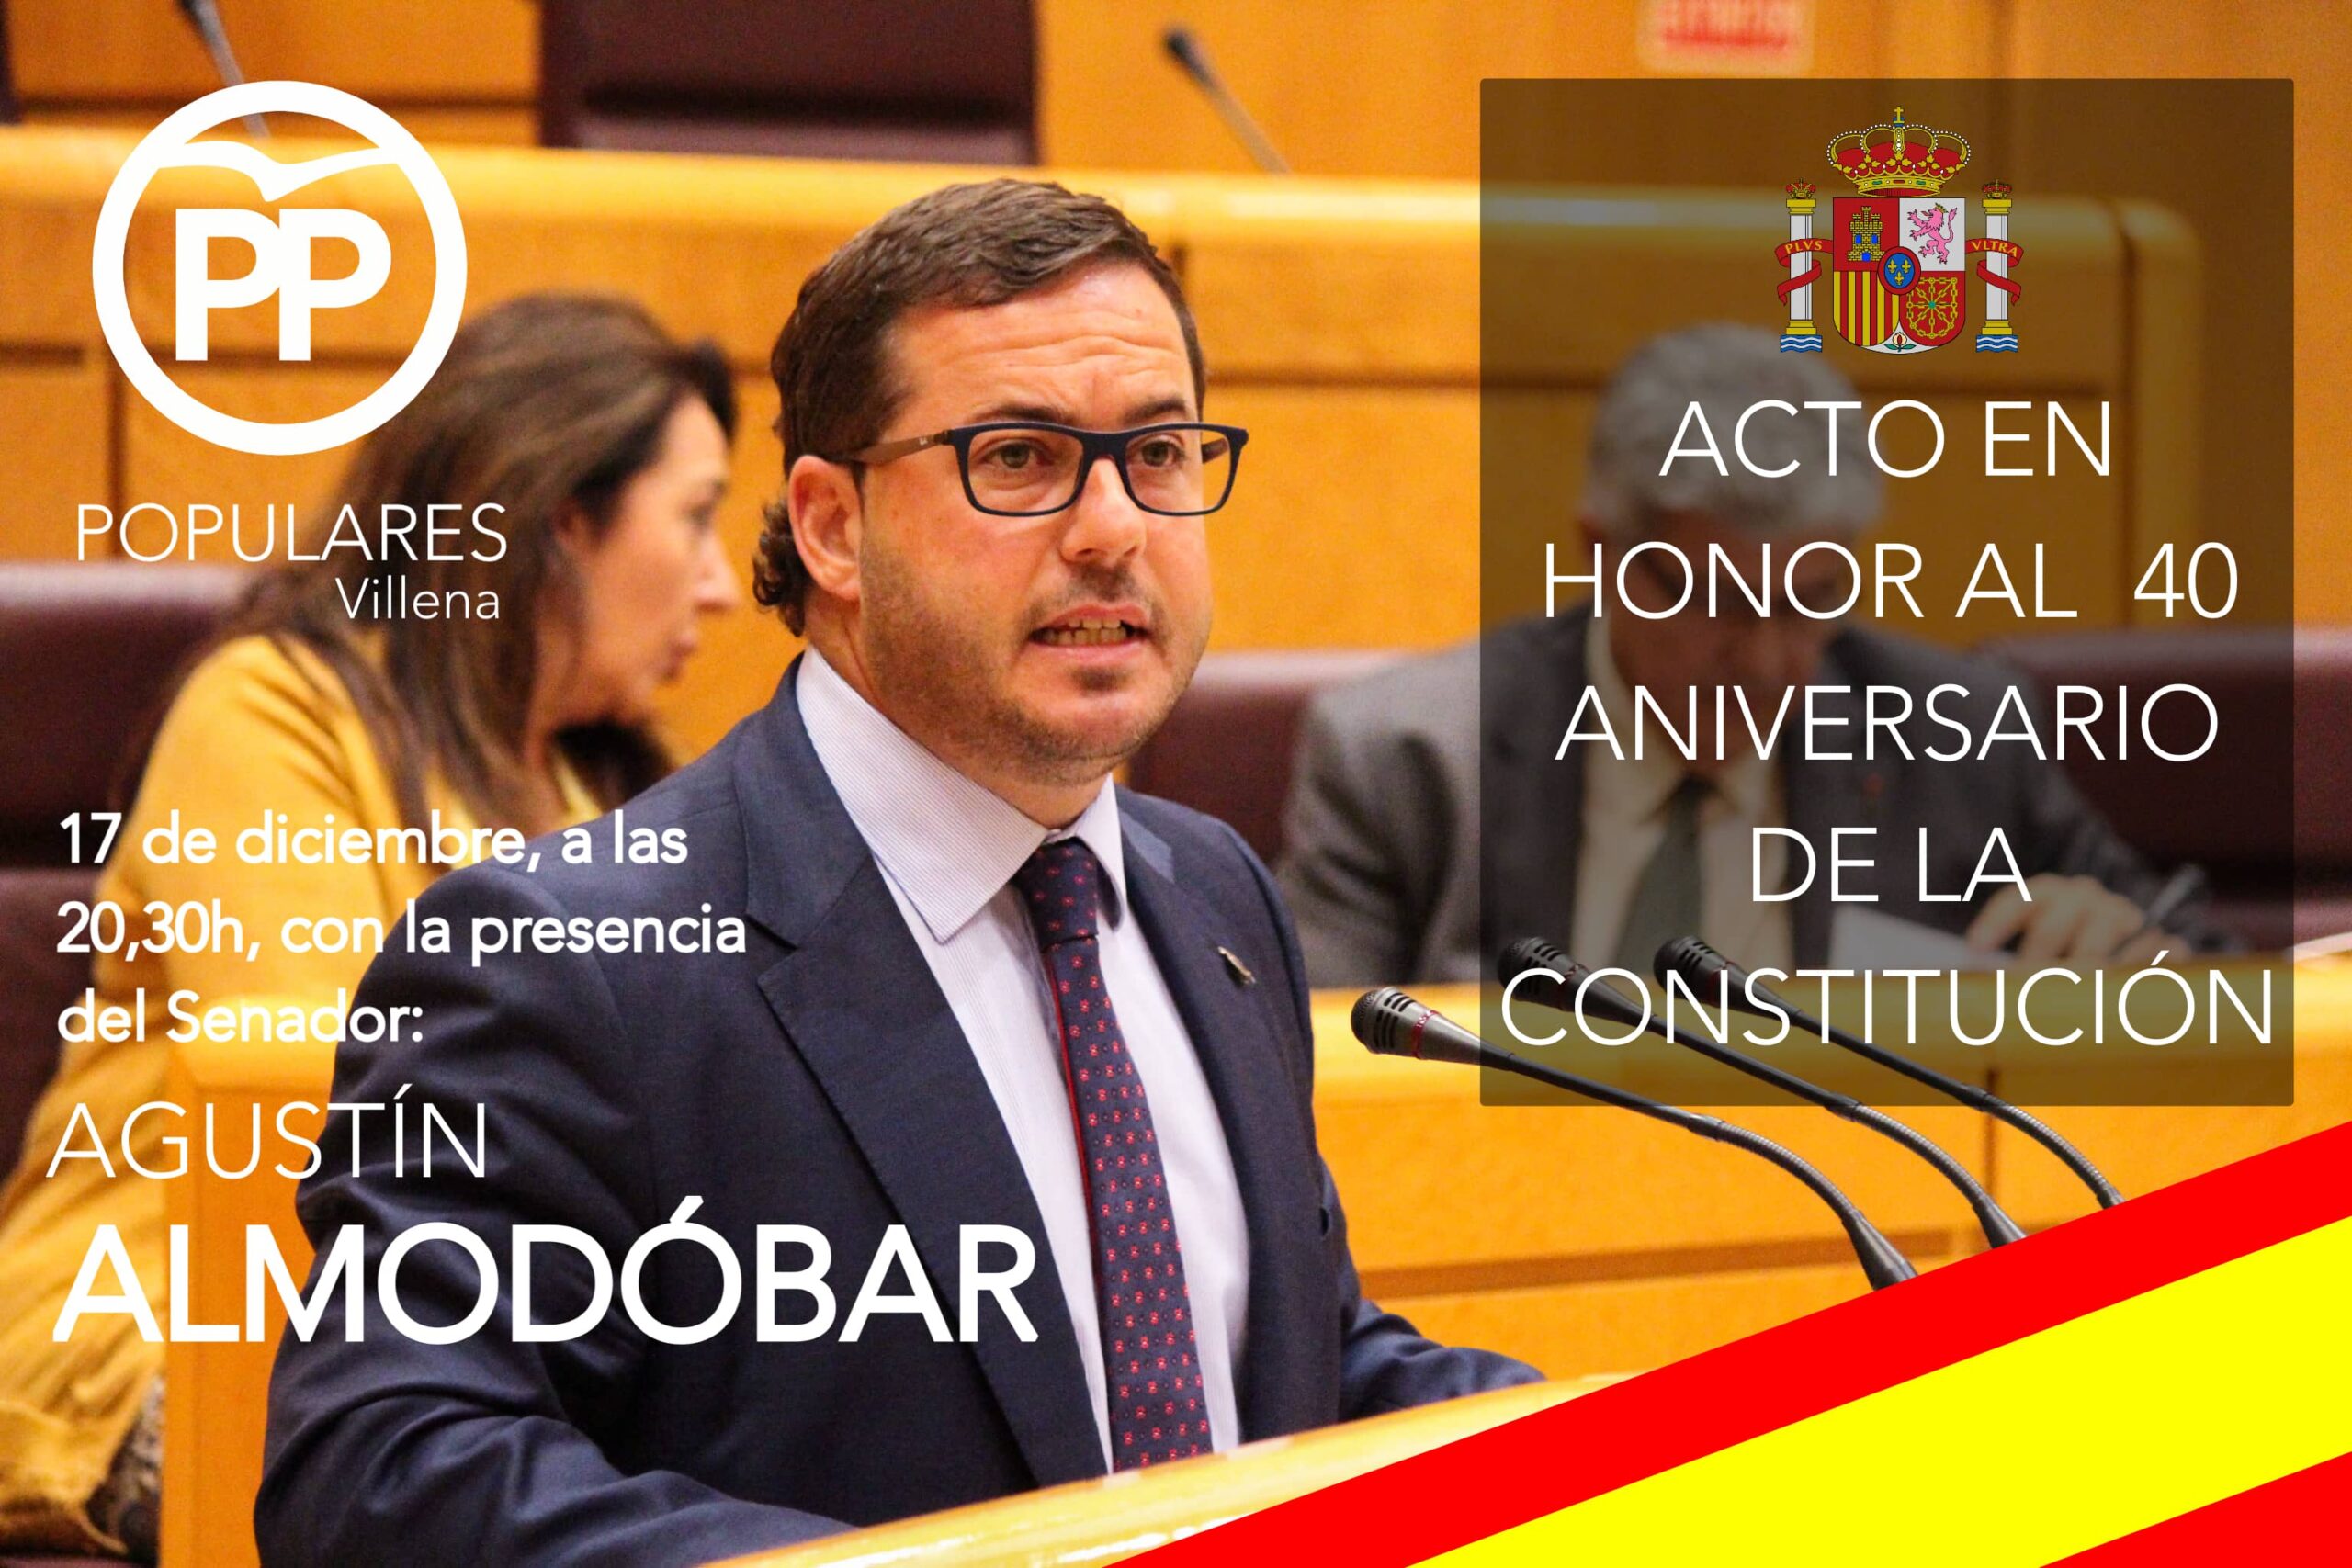 El PP celebrará un acto por el 40 aniversario de la Constitución con la presencia del senador Agustín Almodobar